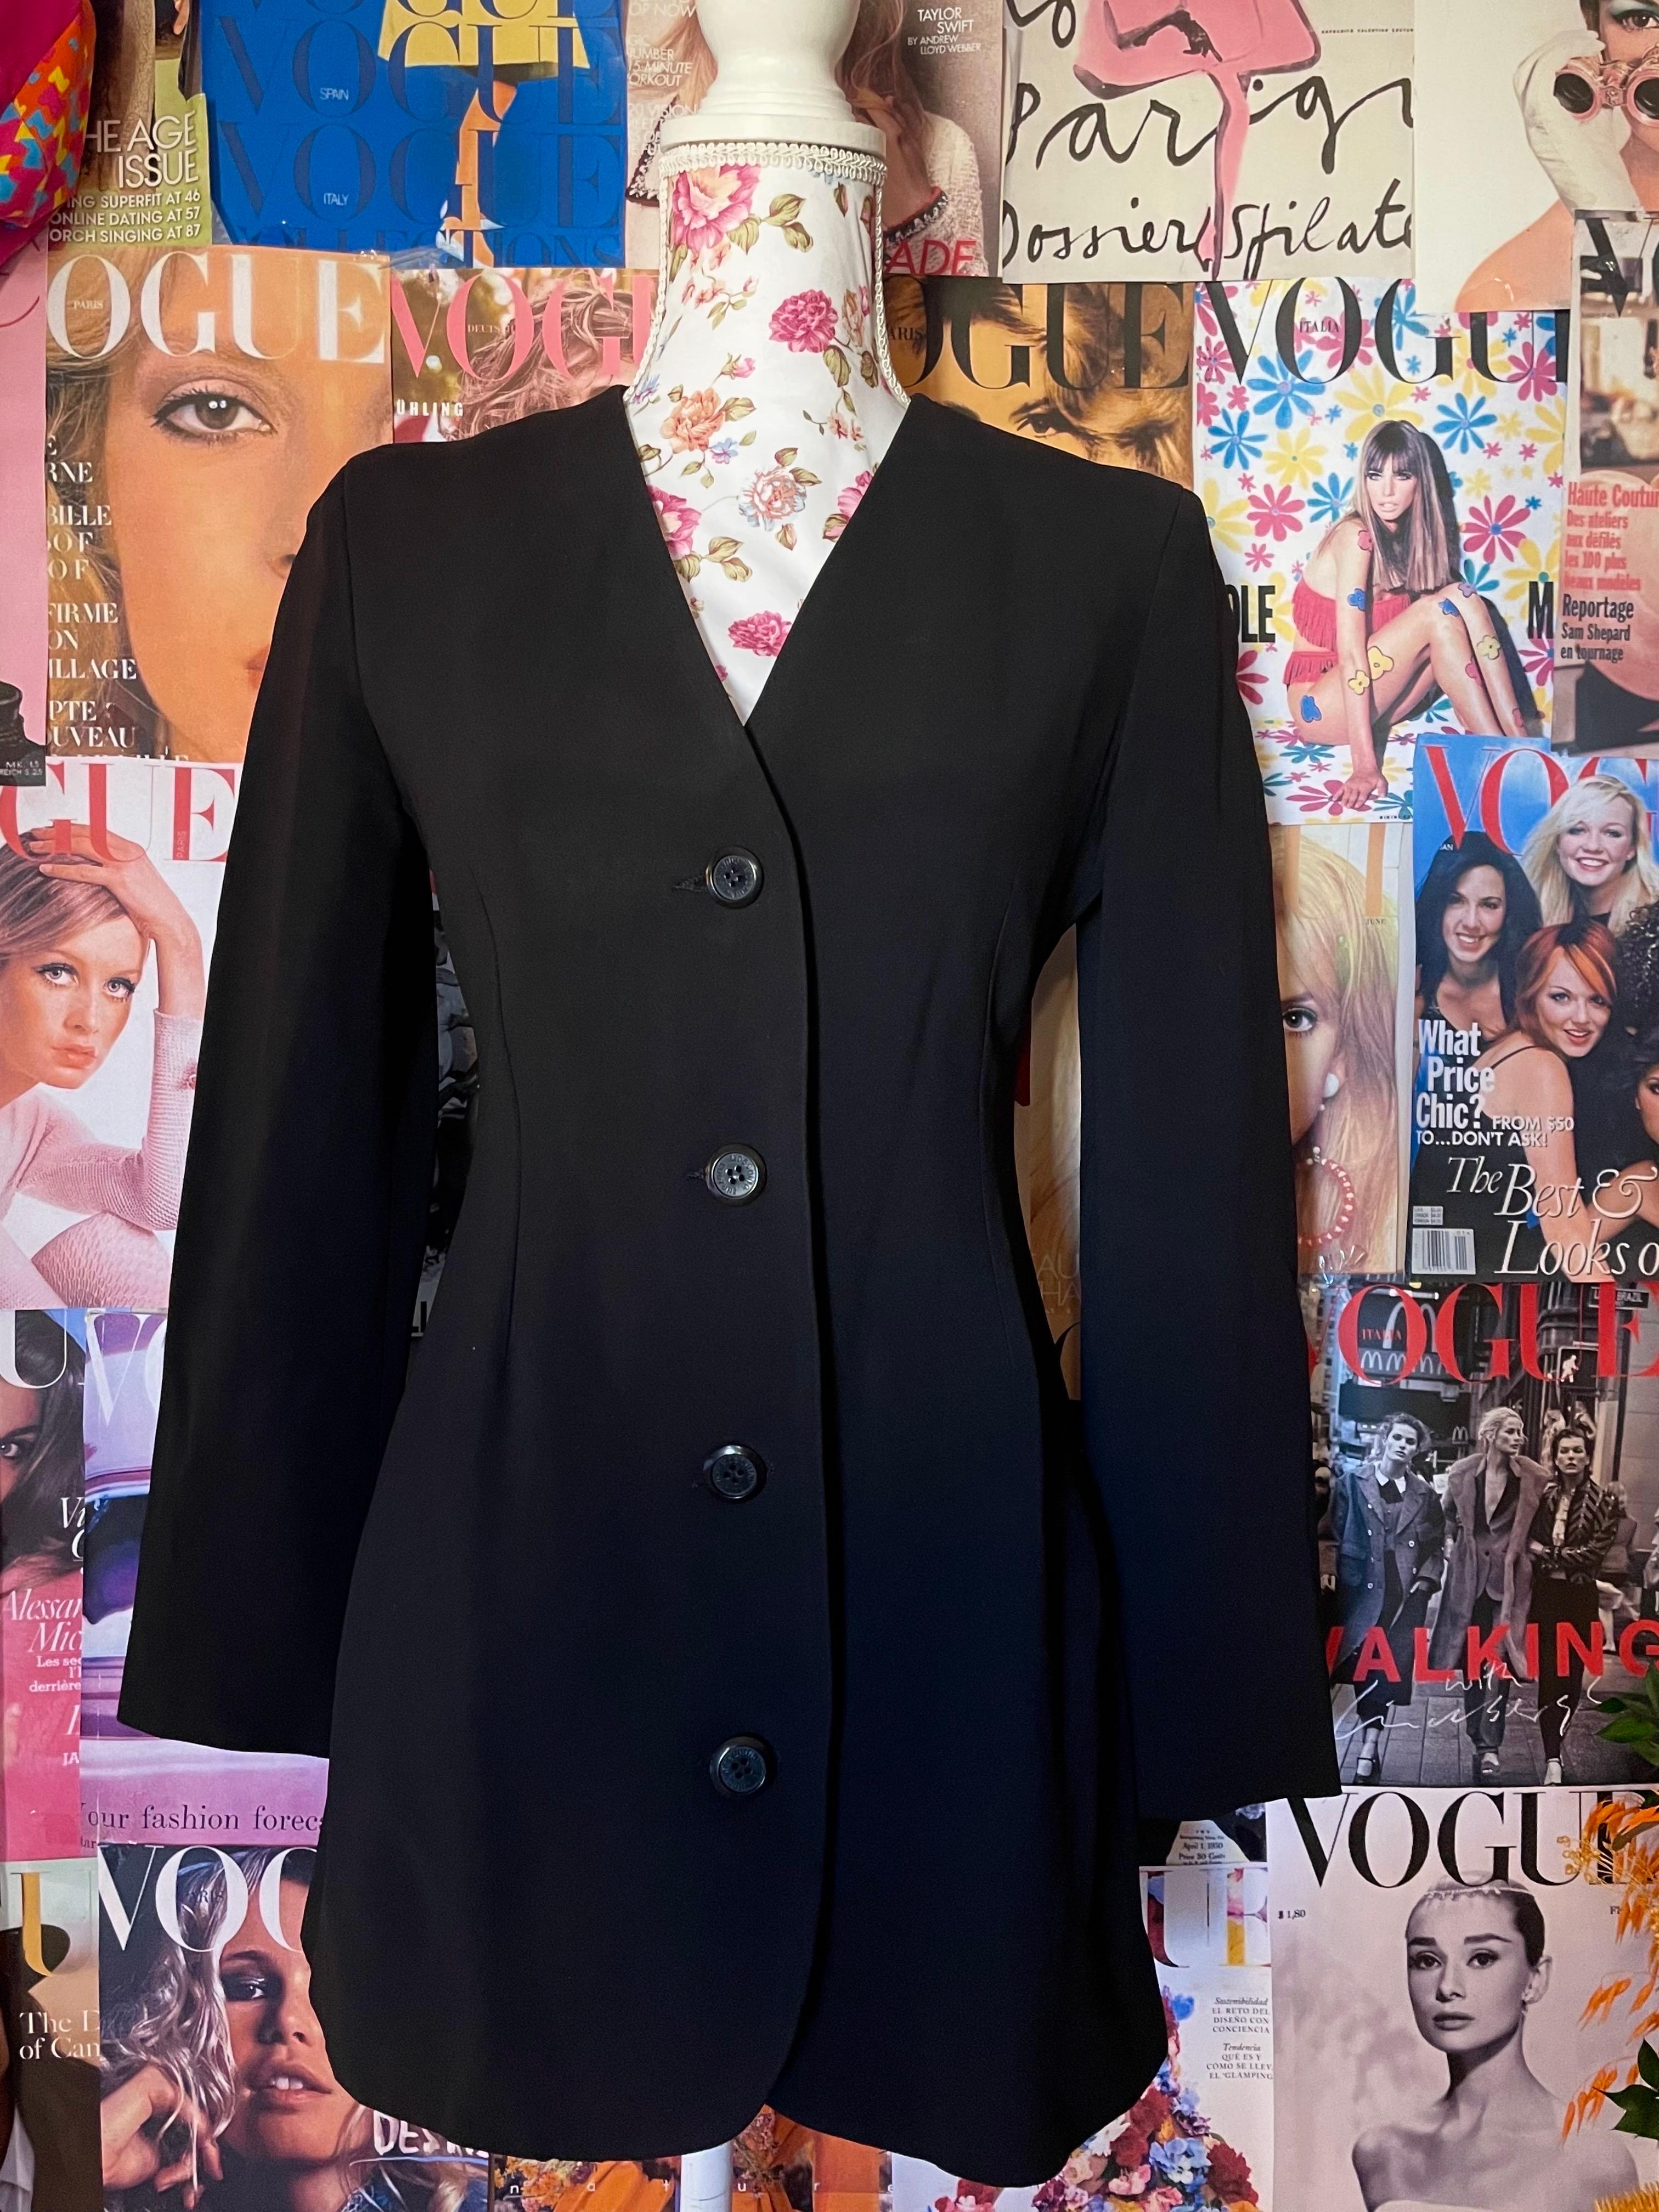 Veste blazer noire Moschino Couture des années 1990. En parfait état.  


Tailles
 I 42 
Fr 38
US 8
ROYAUME-UNI 10 

Mesures : 

JACKET :

Épaules  : 39 cm 
Taille : 35 cm 
Manches : 55 cm
Poitrine 42 cm
Longueur 73 cm



Assurez-vous de connaître